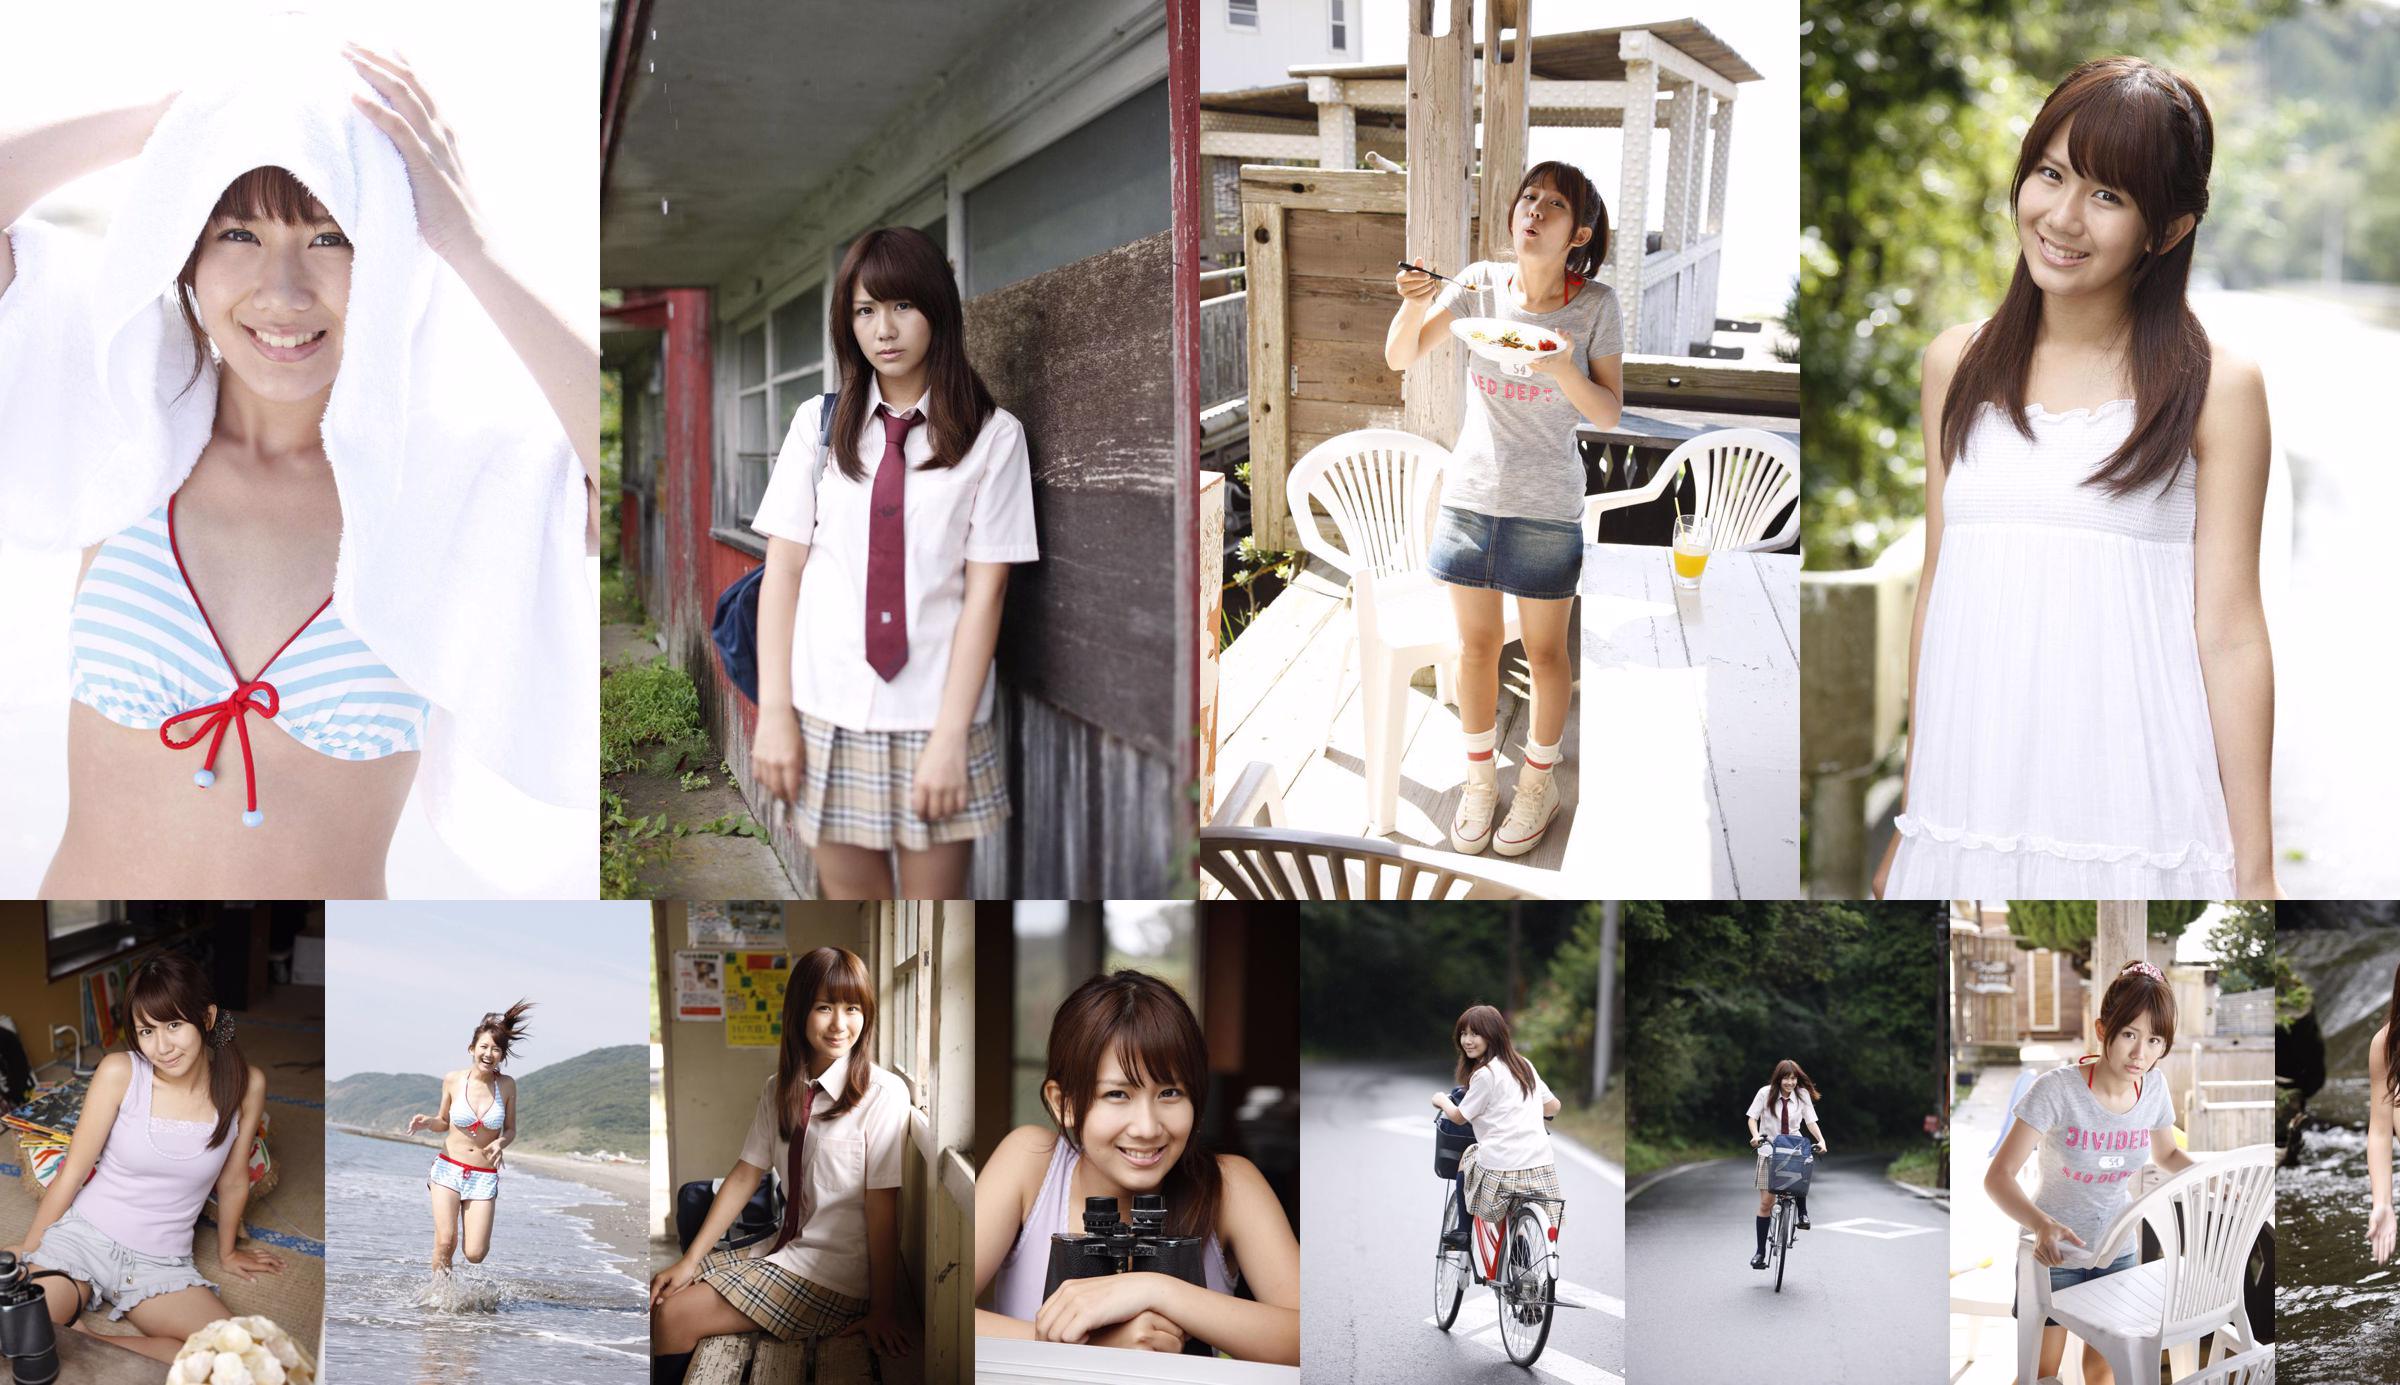 Okai Chisato Chisato Okai / Chisato Okai [สวัสดี!  No.30b4ec หน้า 2